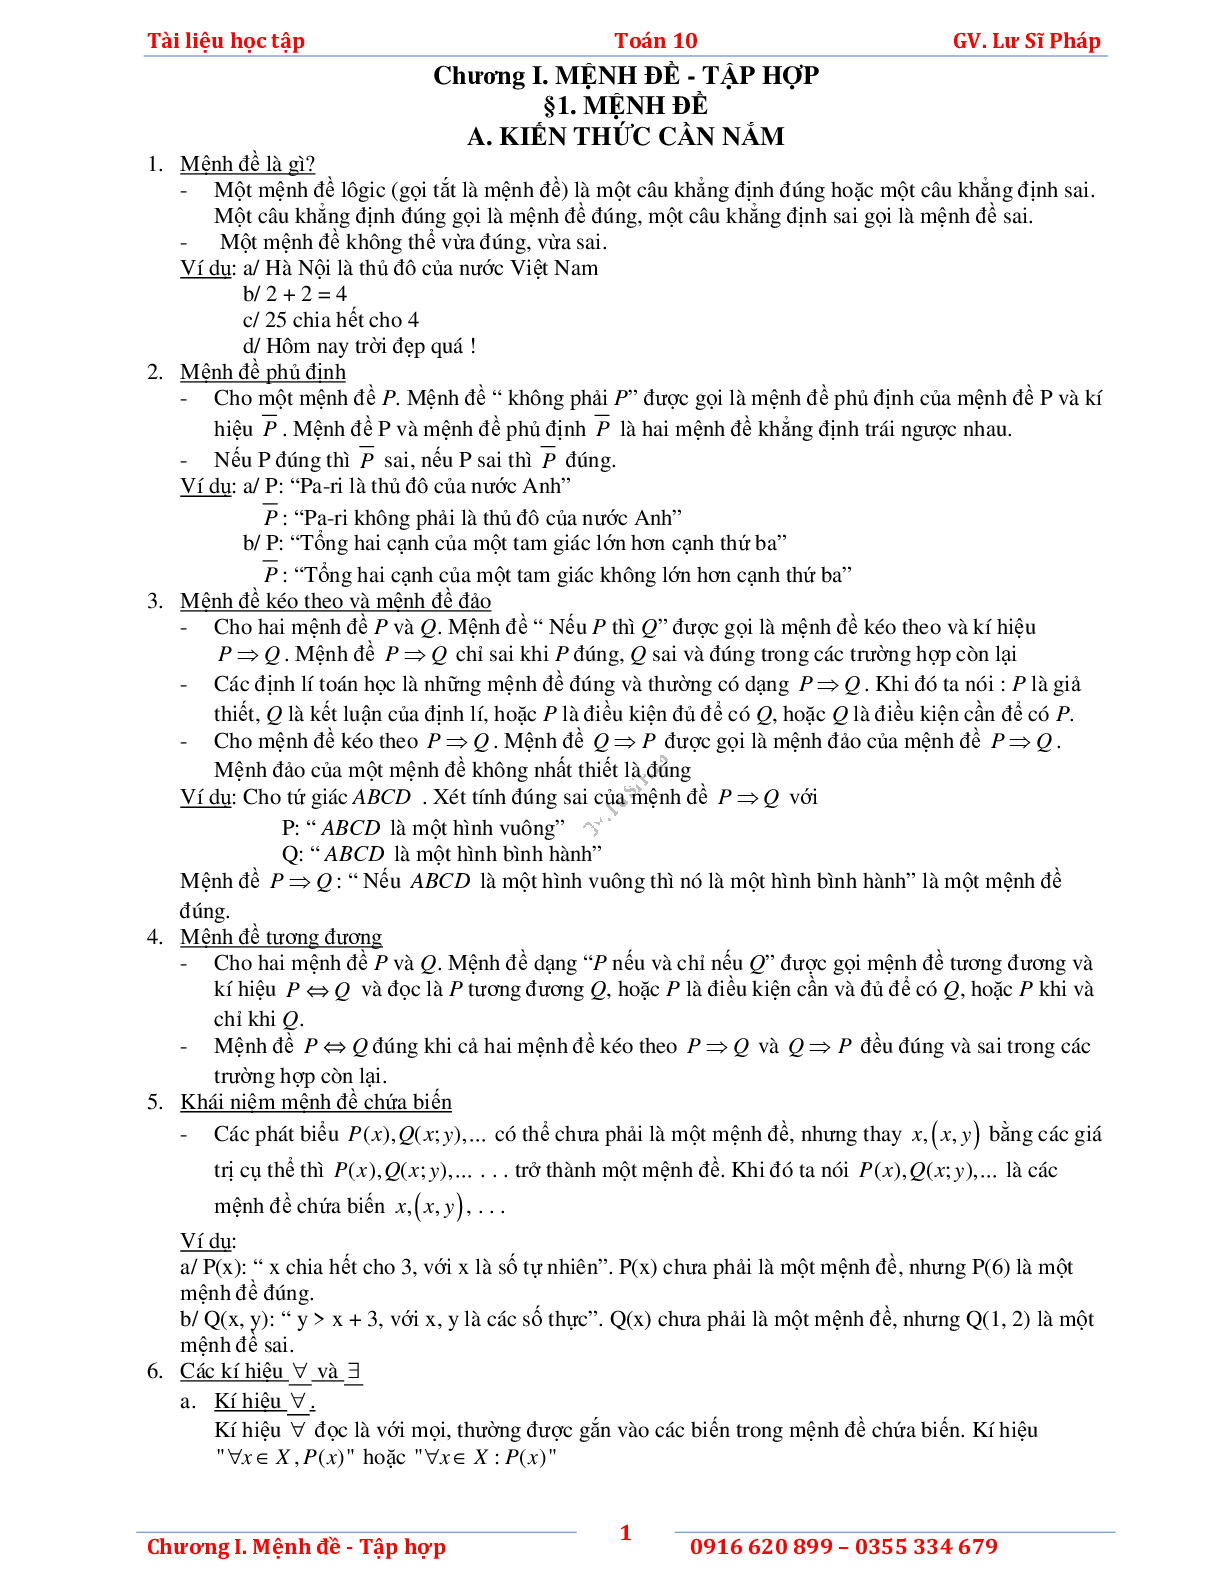 Tài liệu học tập phần Mệnh đề và tập hợp - phần 1 (trang 5)